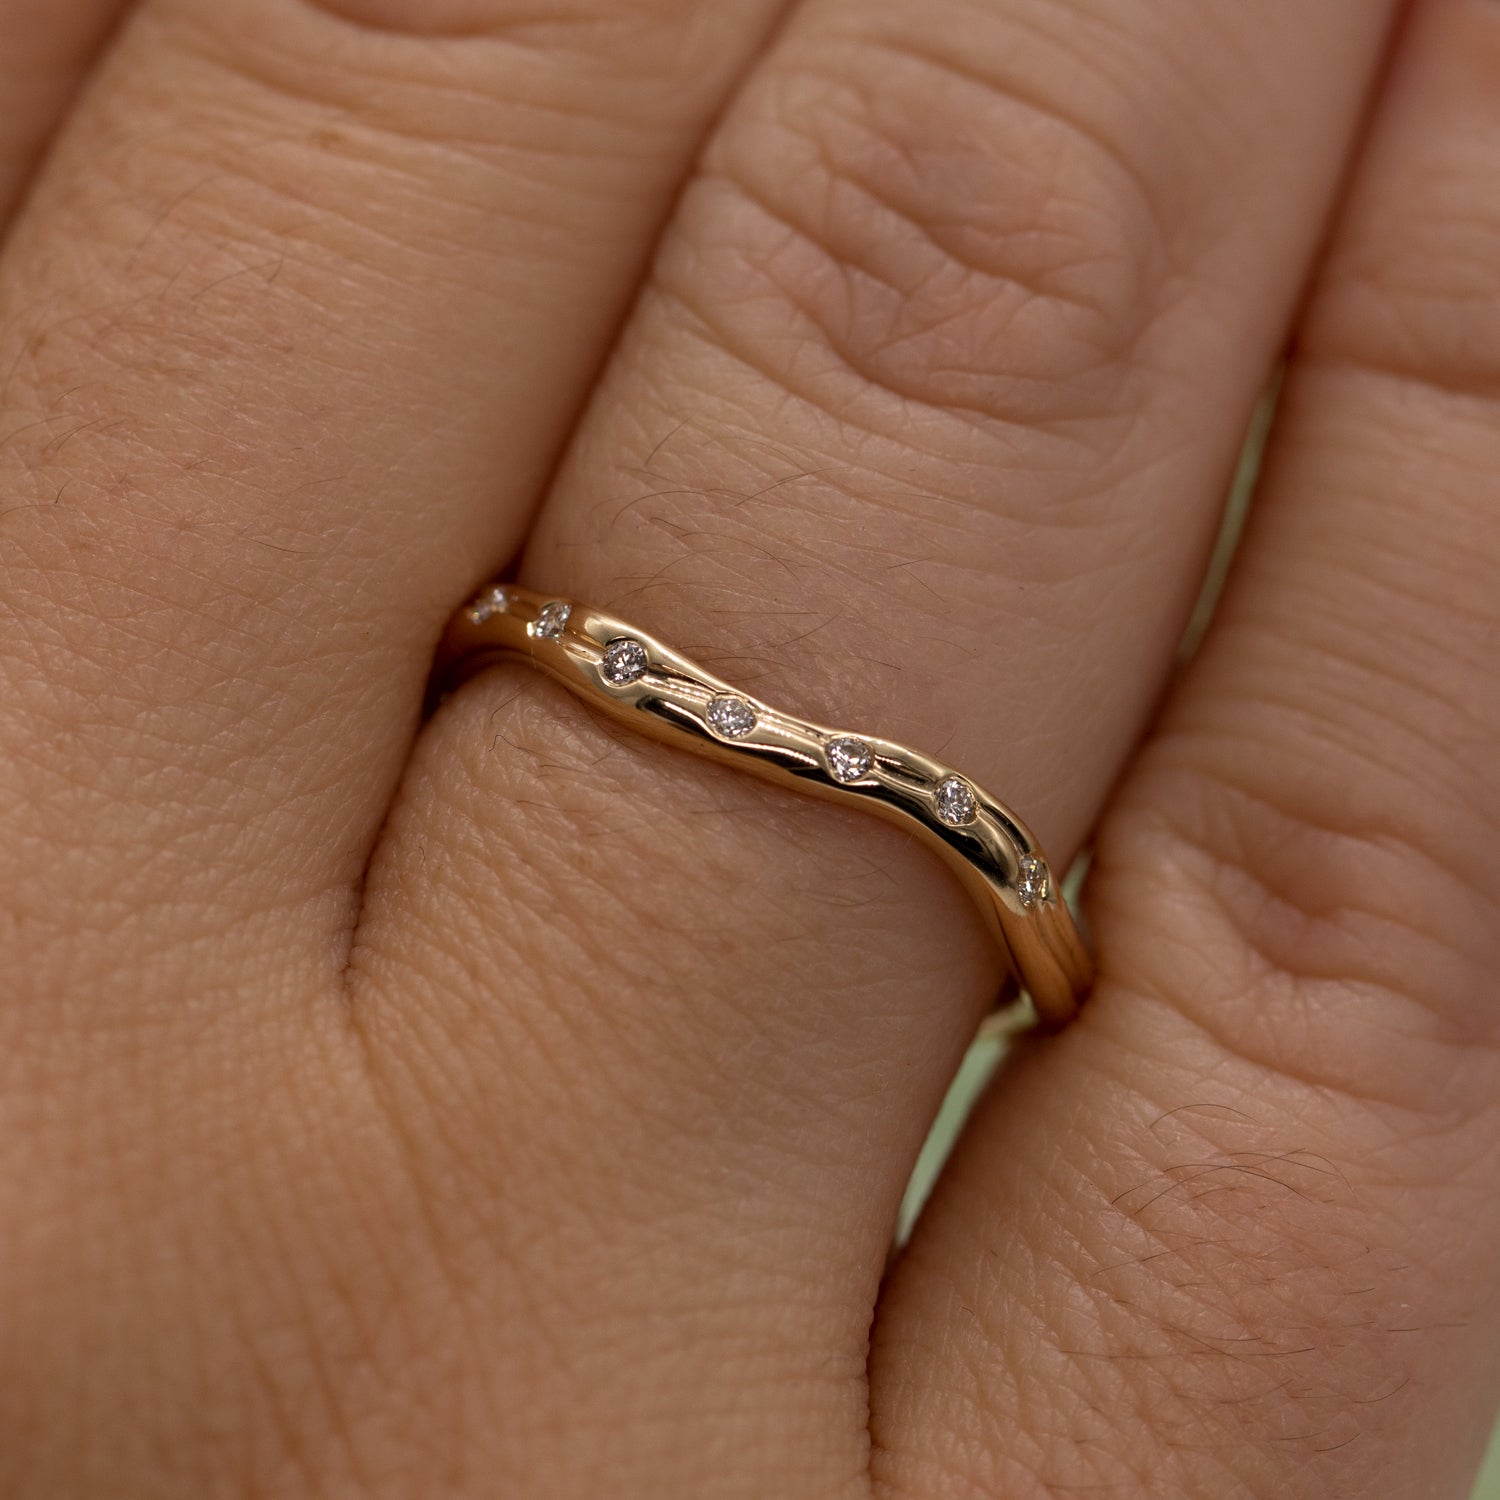 Udsnit af hånd set tæt på der viser en ring i guld med syv diamanter på lysegrøn baggrund. Ringen er formgivet organisk og bølger elegant.